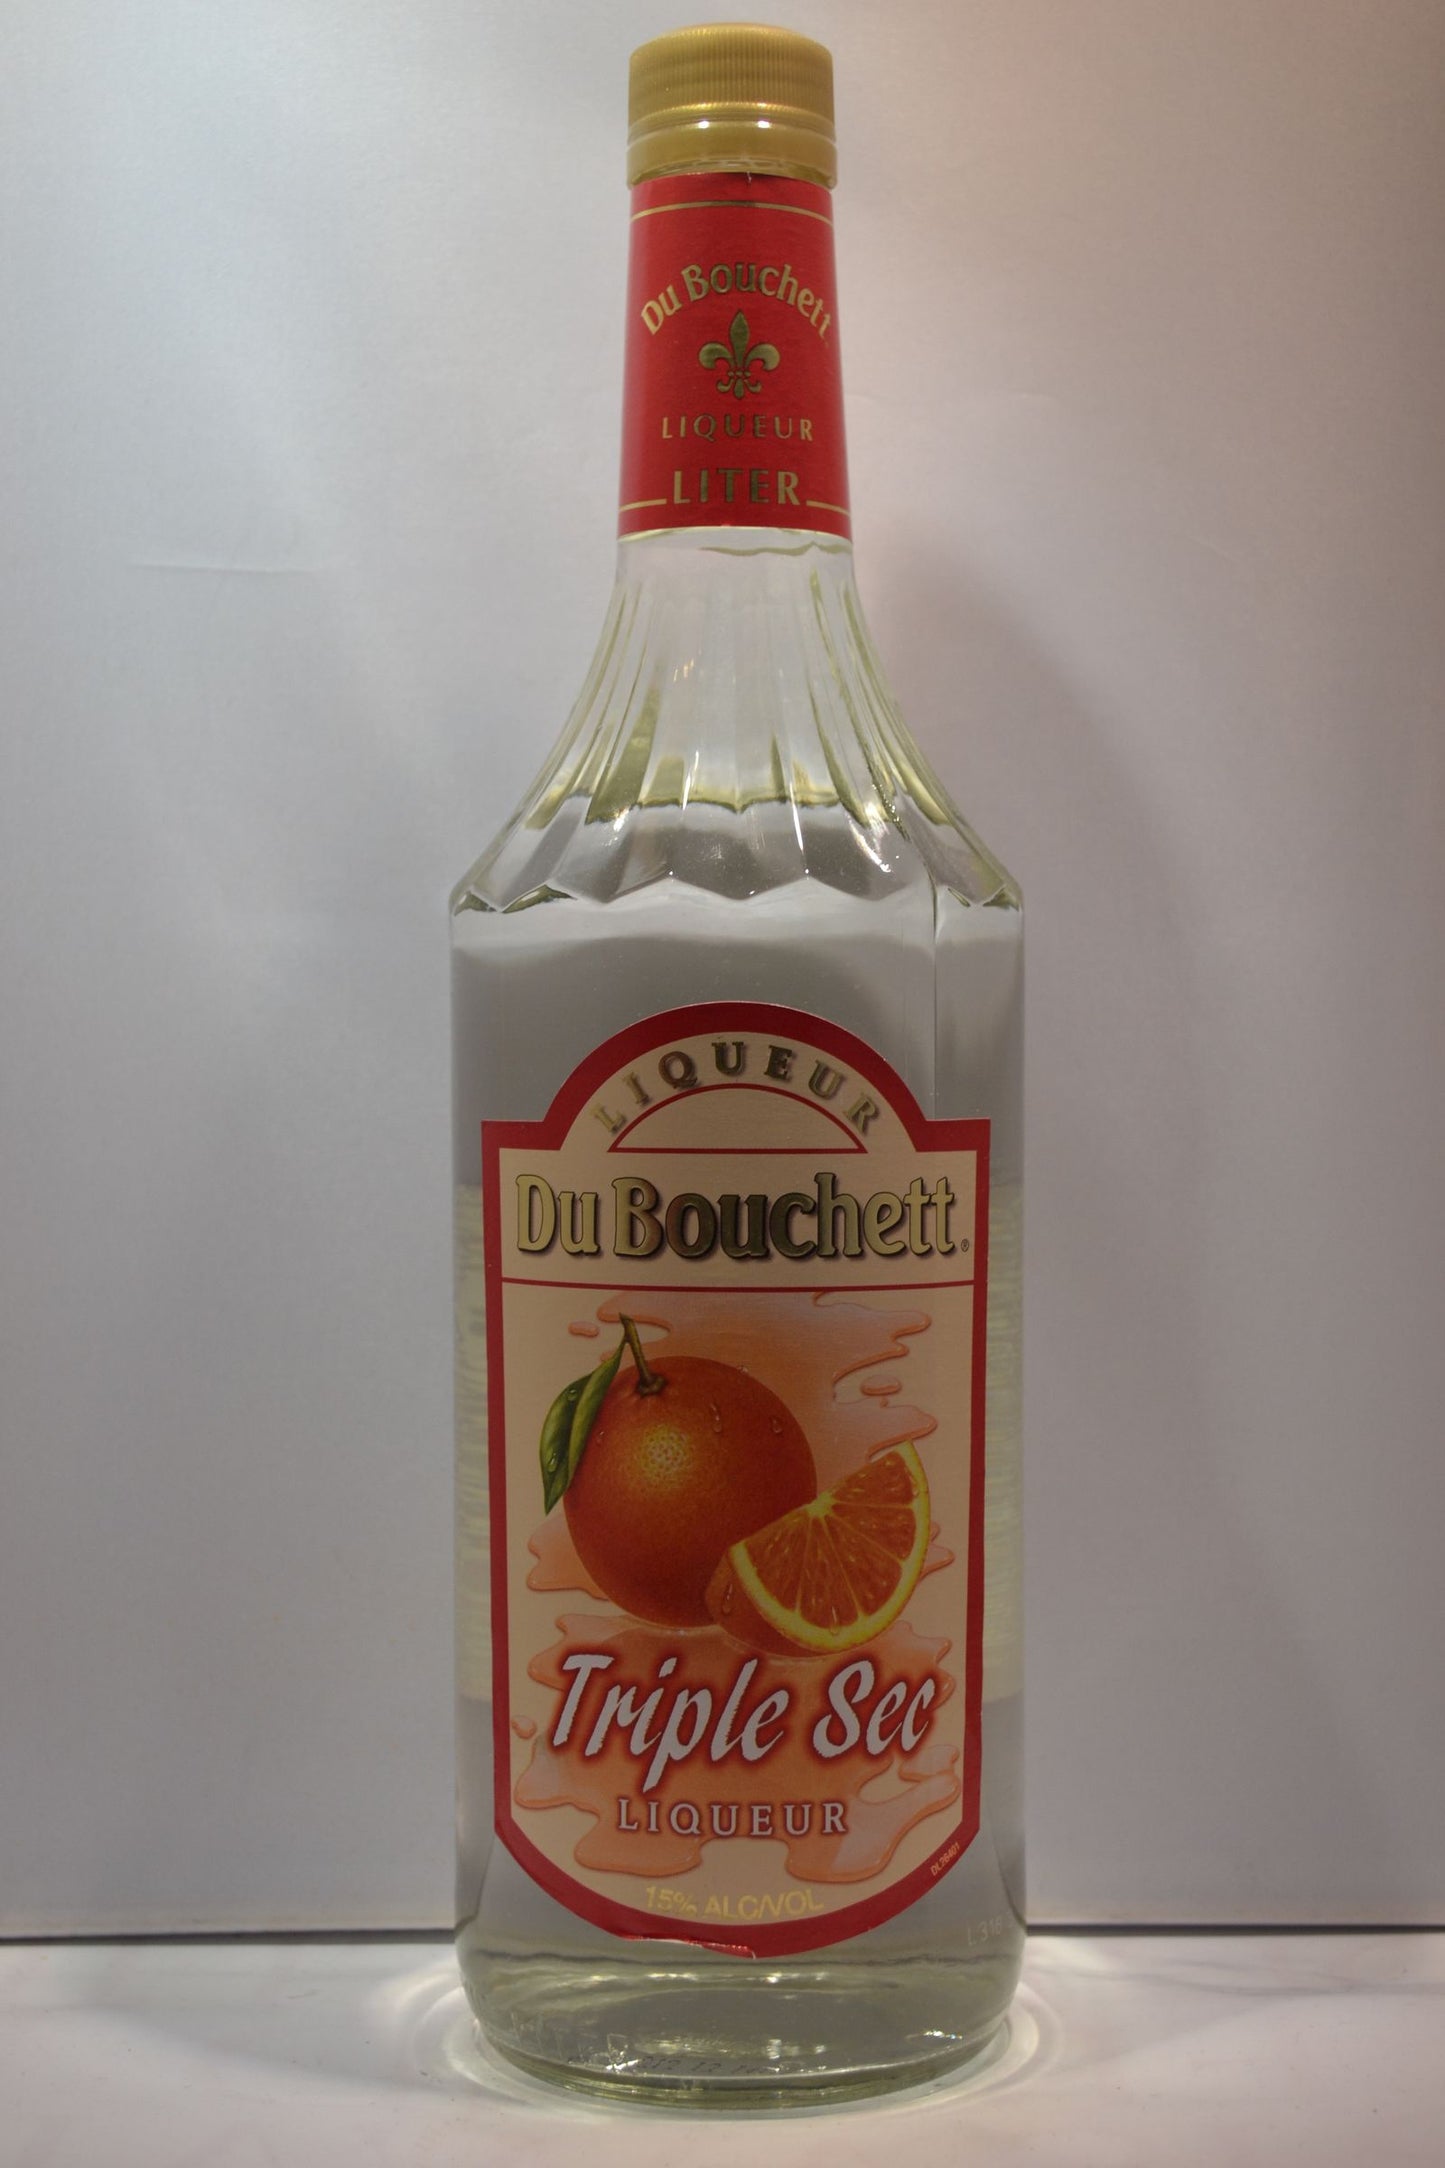 DE BOUCHETT TRIPLE SEC LIQUEUR 1LI- Remedy Liquor 